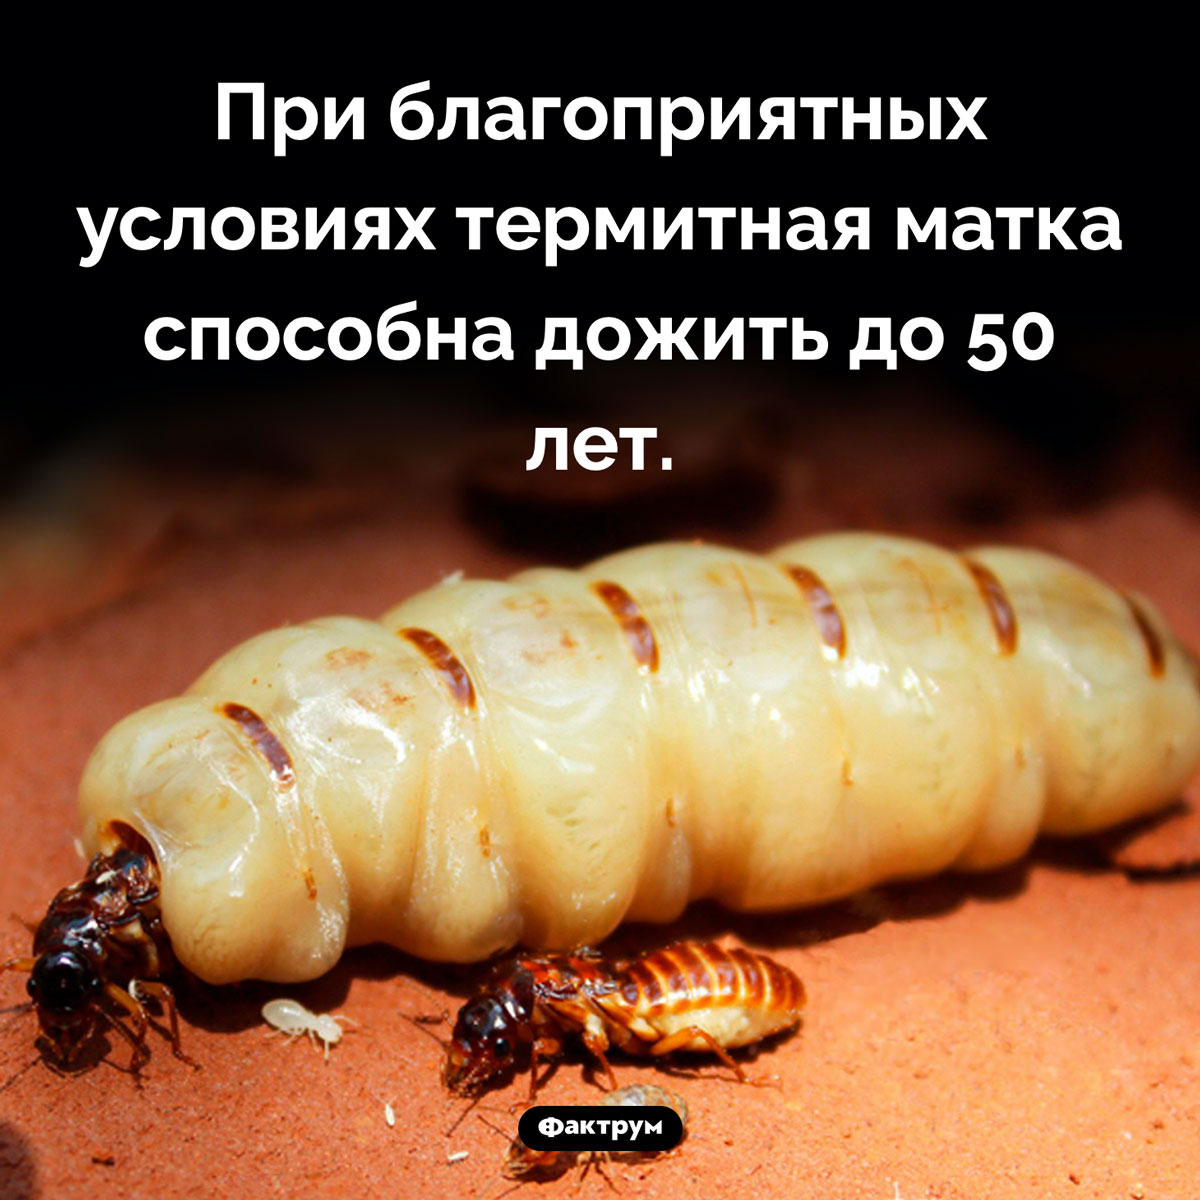 Продолжительность жизни термитов. При благоприятных условиях термитная матка способна дожить до 50 лет.